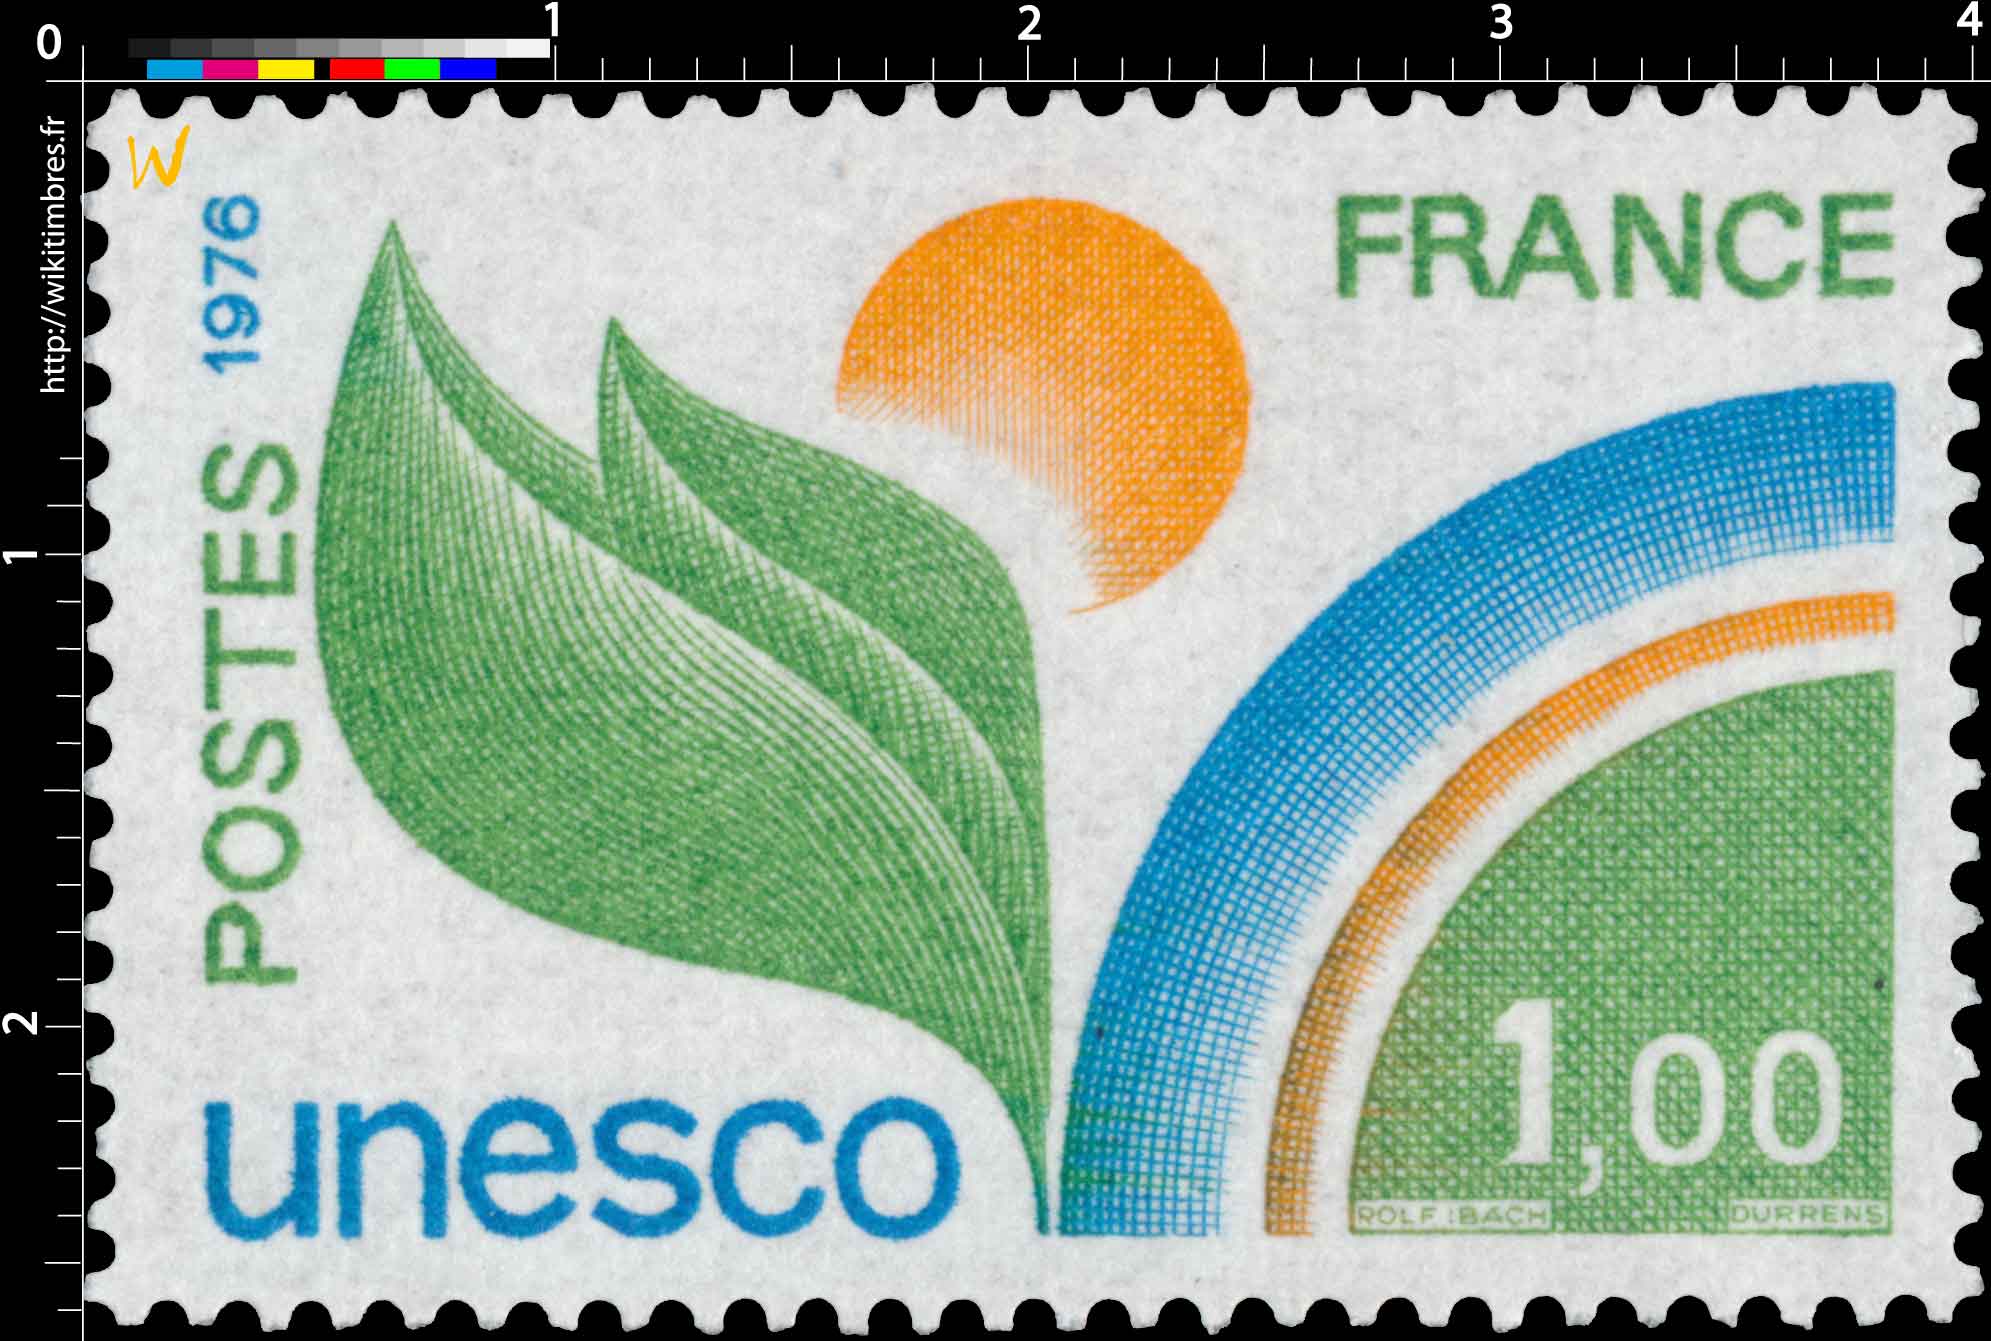 1976 Unesco